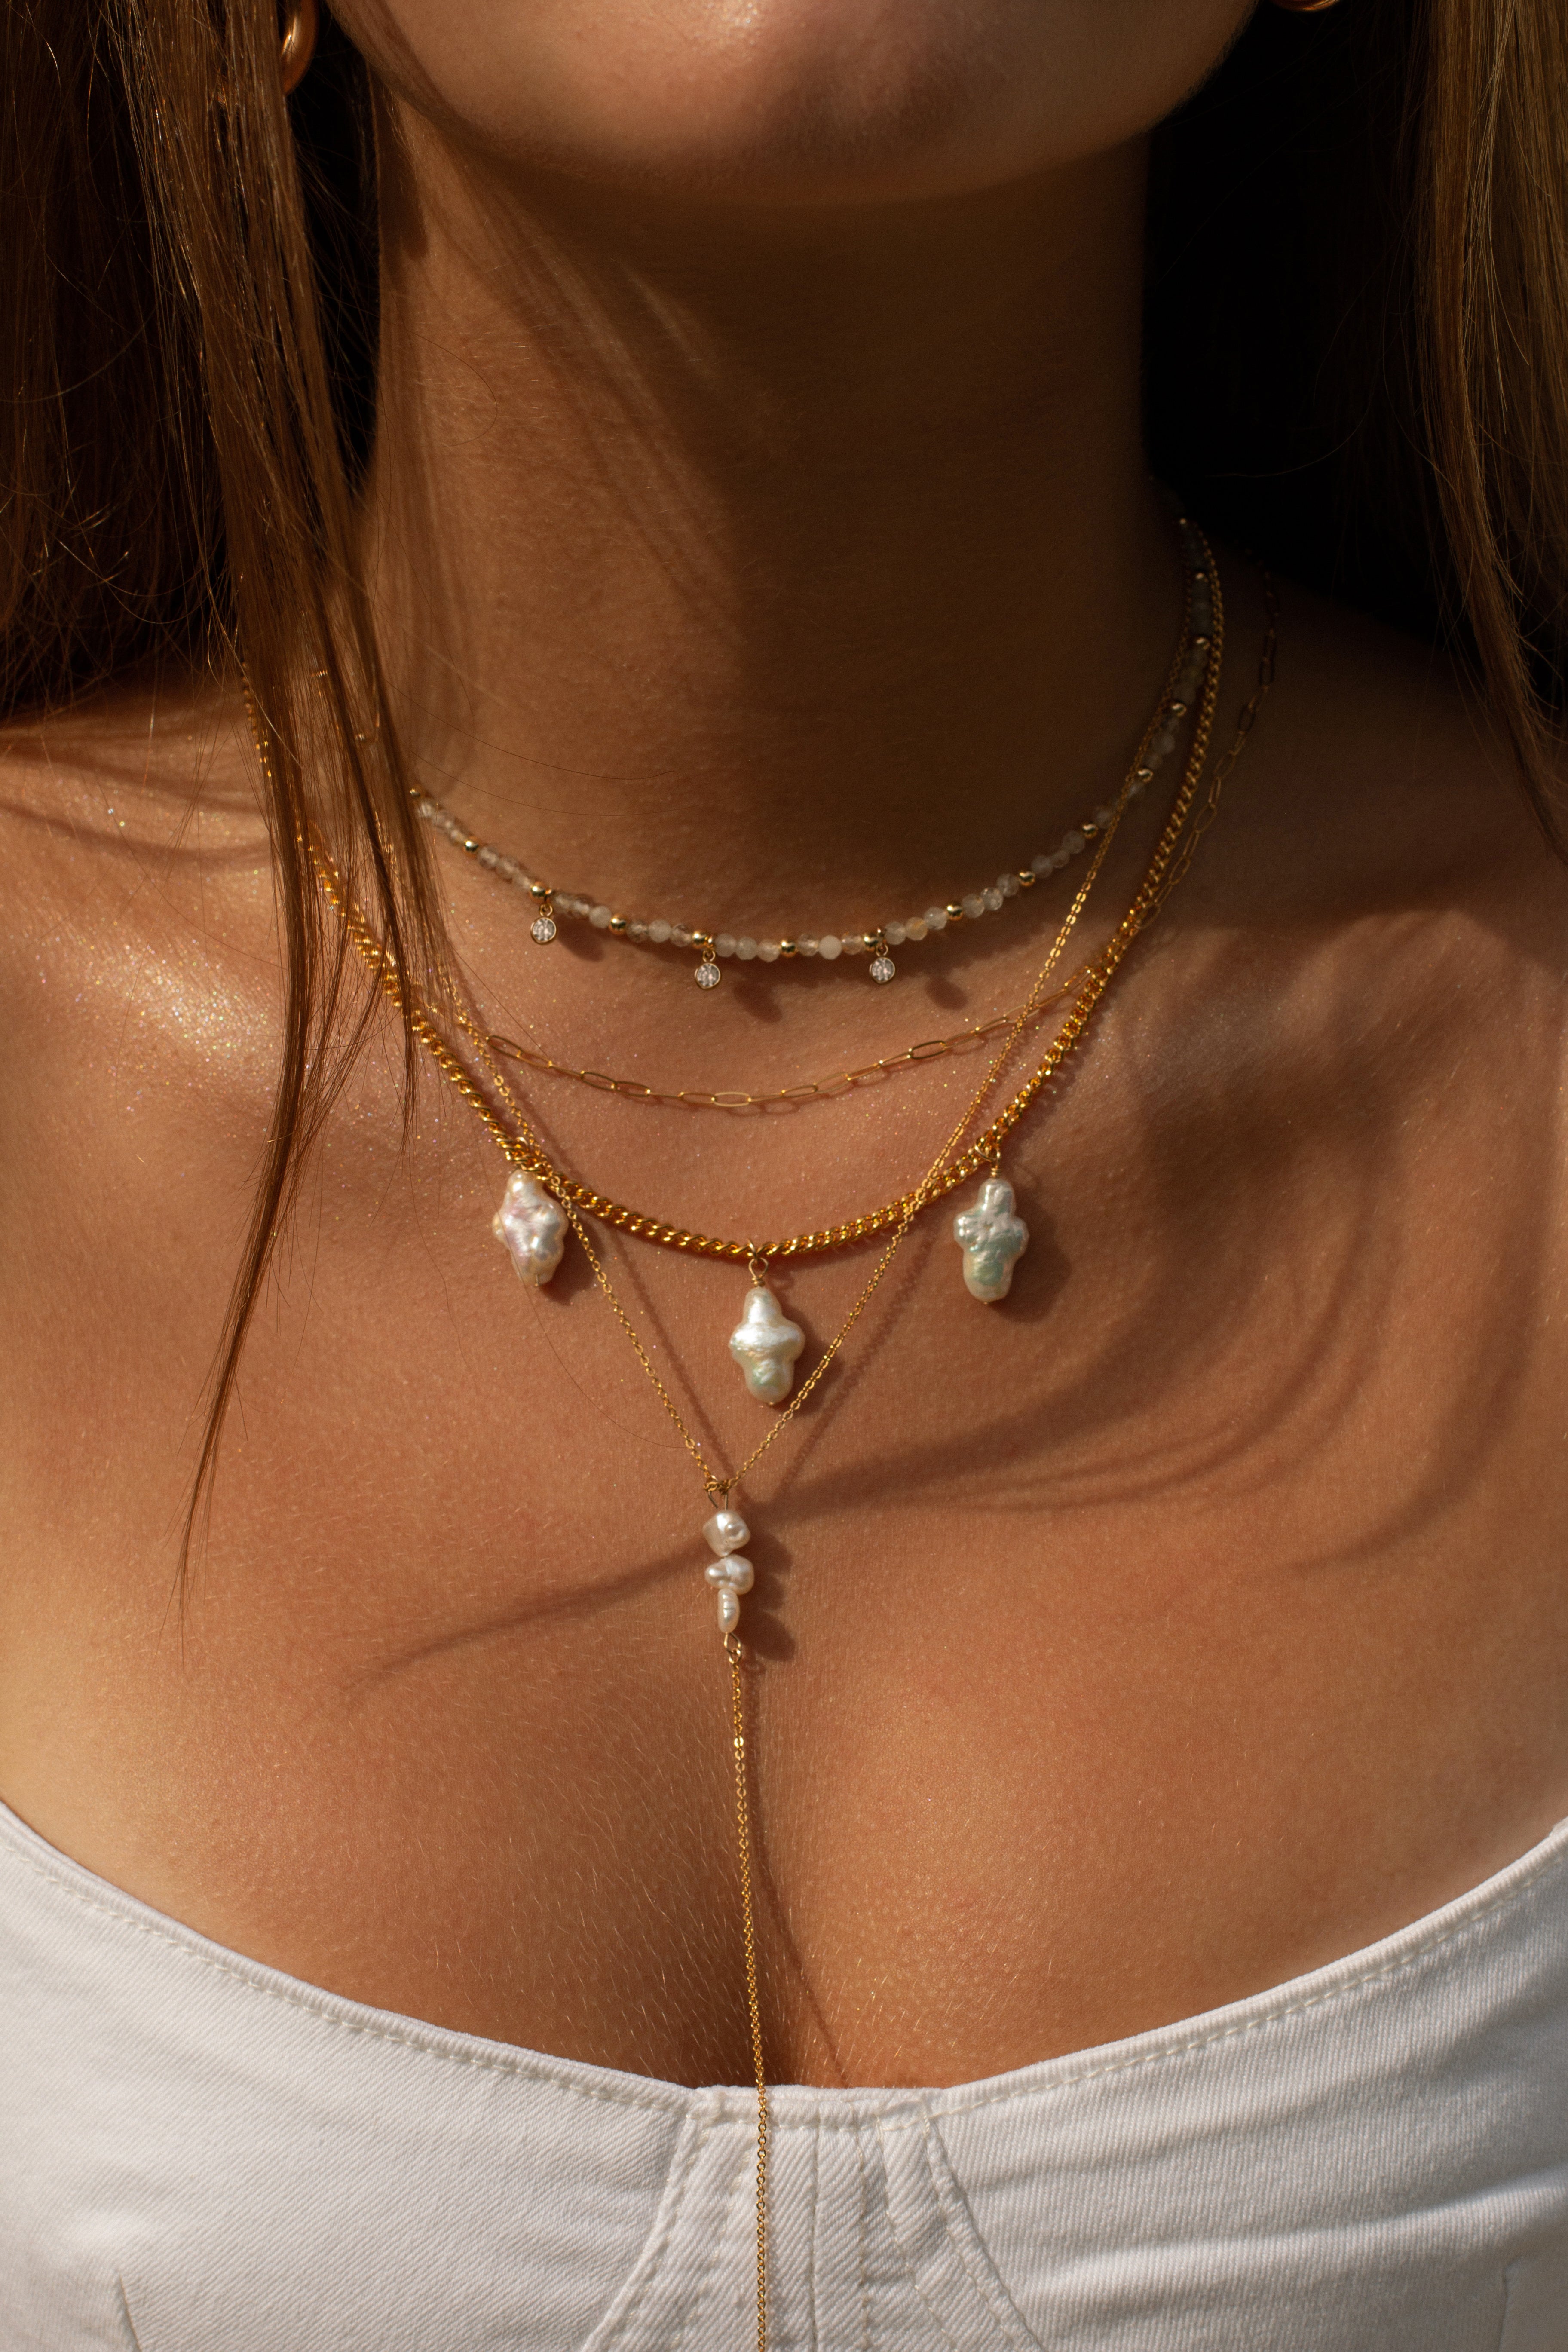 Marina necklace